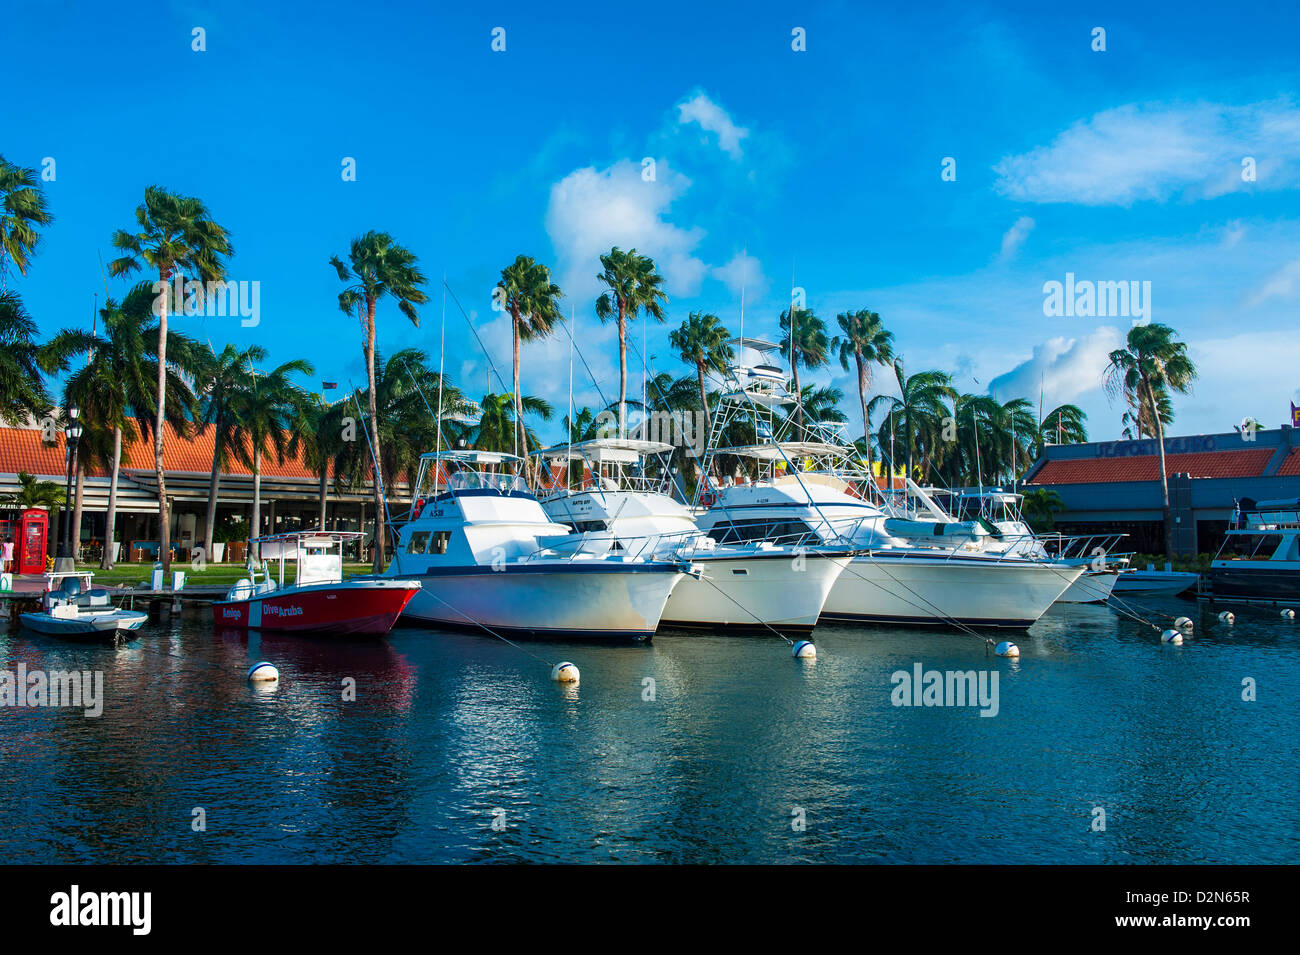 Port de plaisance au centre-ville d'Oranjestad, la capitale d'Aruba, îles ABC, Netherlands Antilles, Caraïbes, Amérique Centrale Banque D'Images